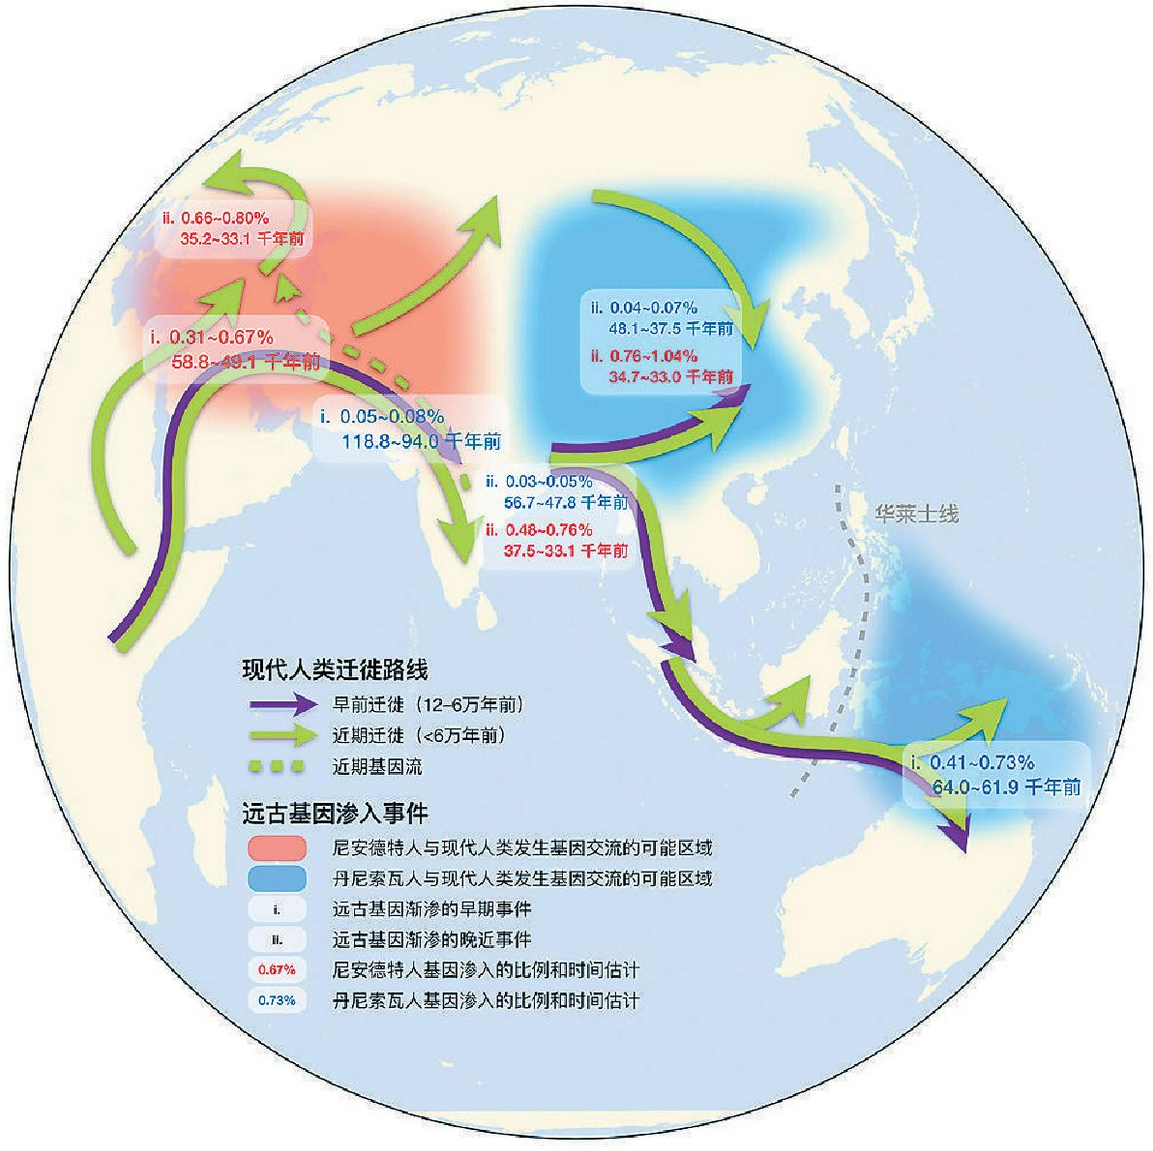 现代人类史前迁徙路线及其与远古人类的基因交流模式示意图